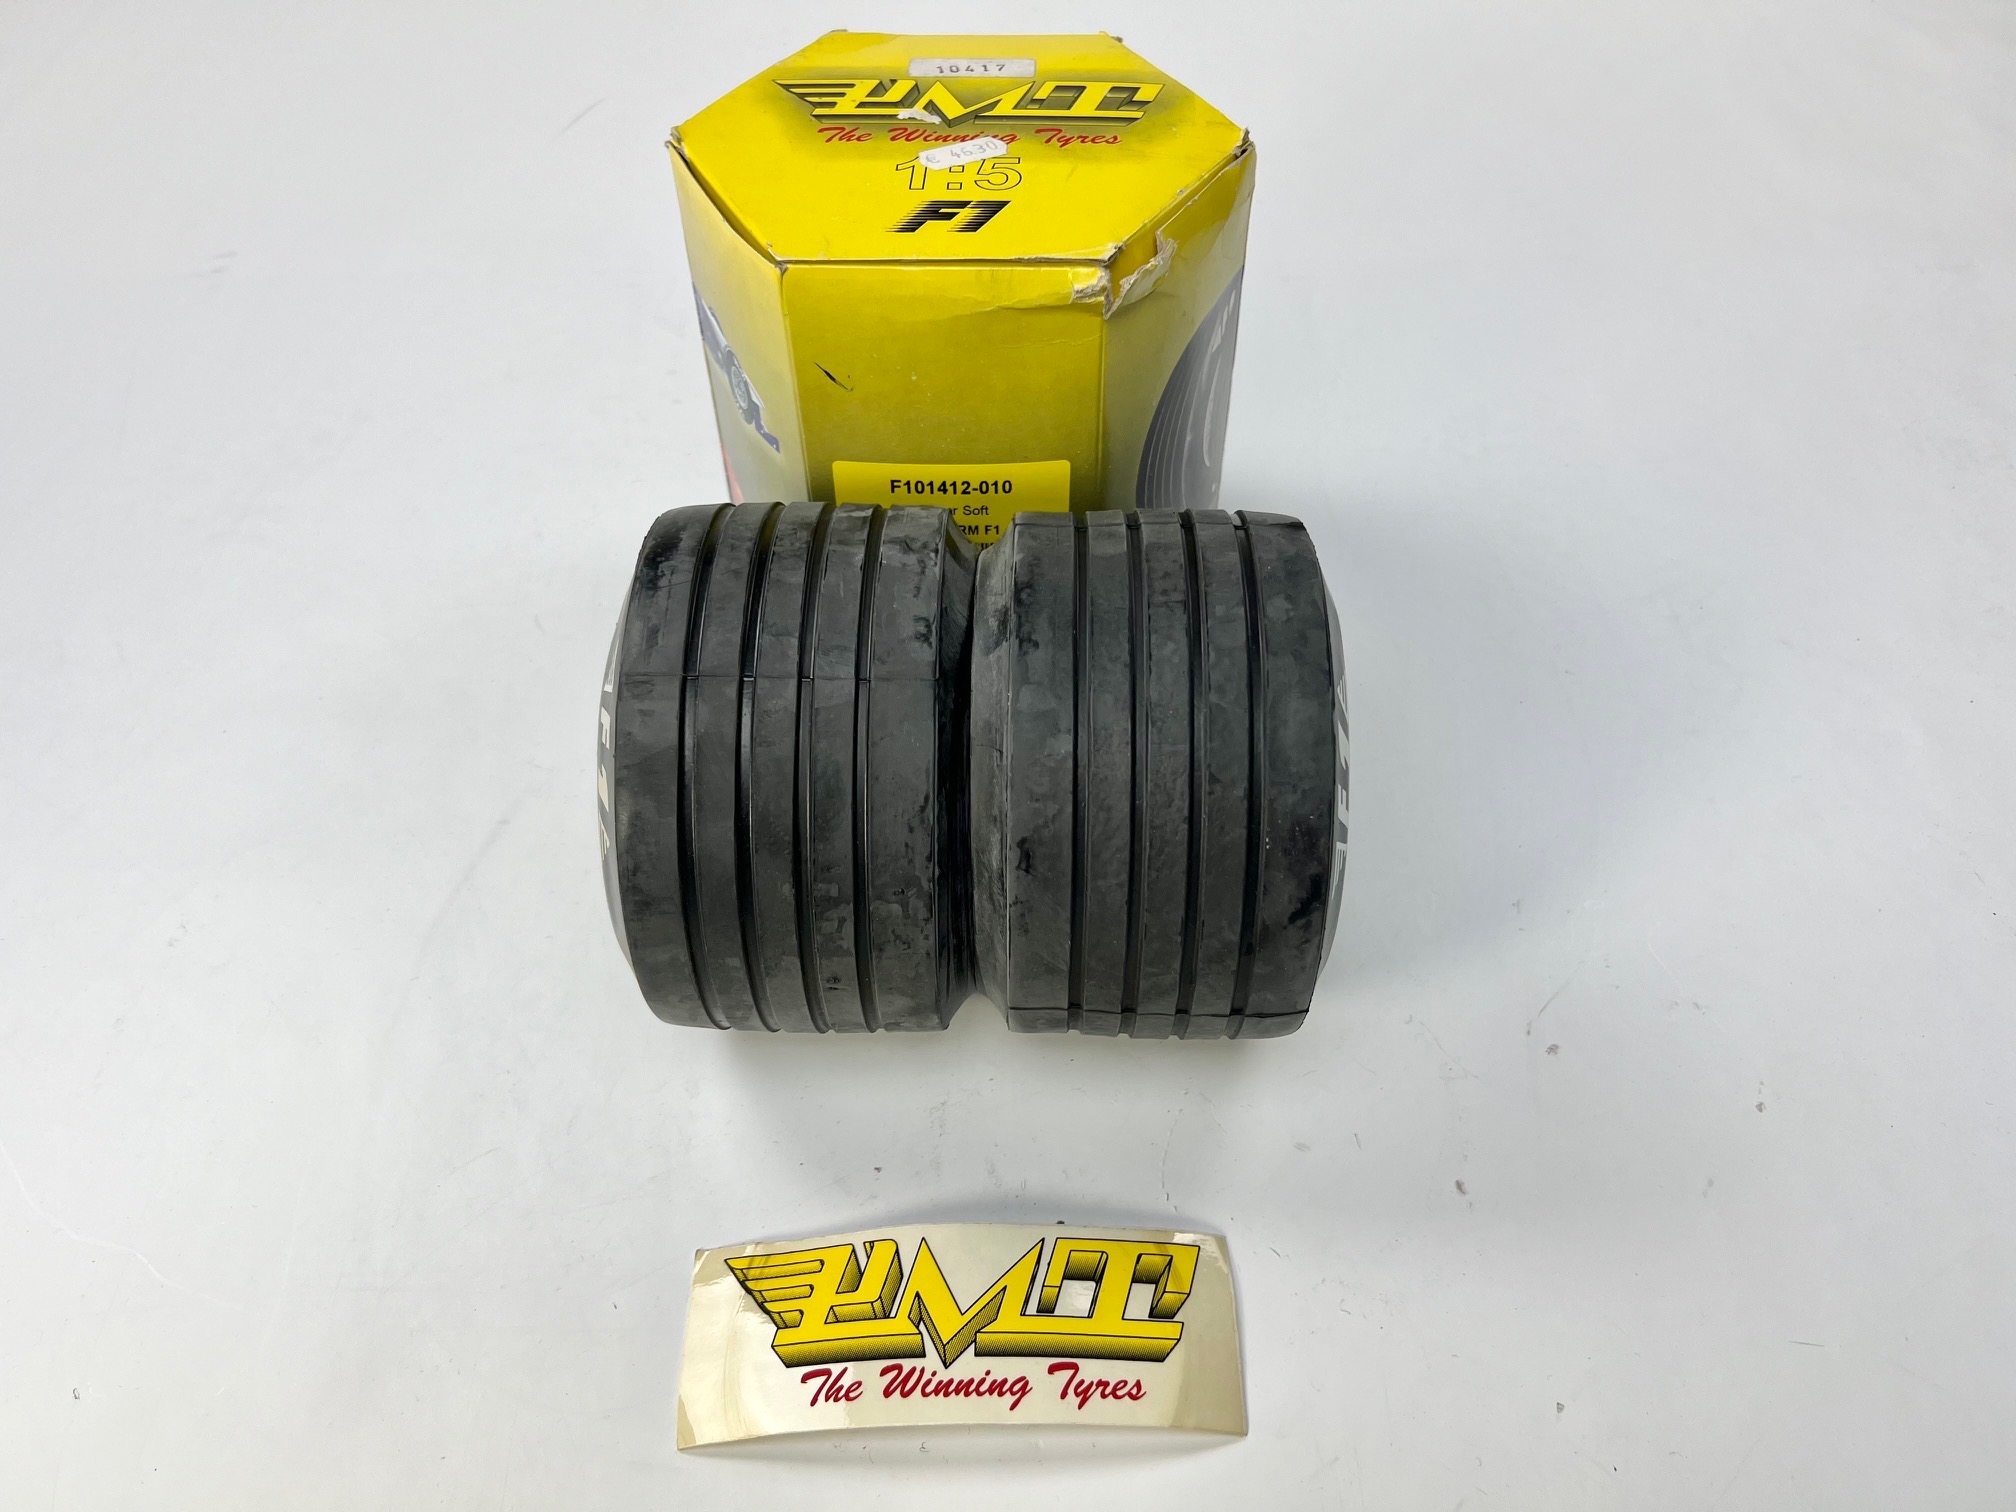 PMT Formel 1 Reifen mit Einlage F101412-010, 1 Paar